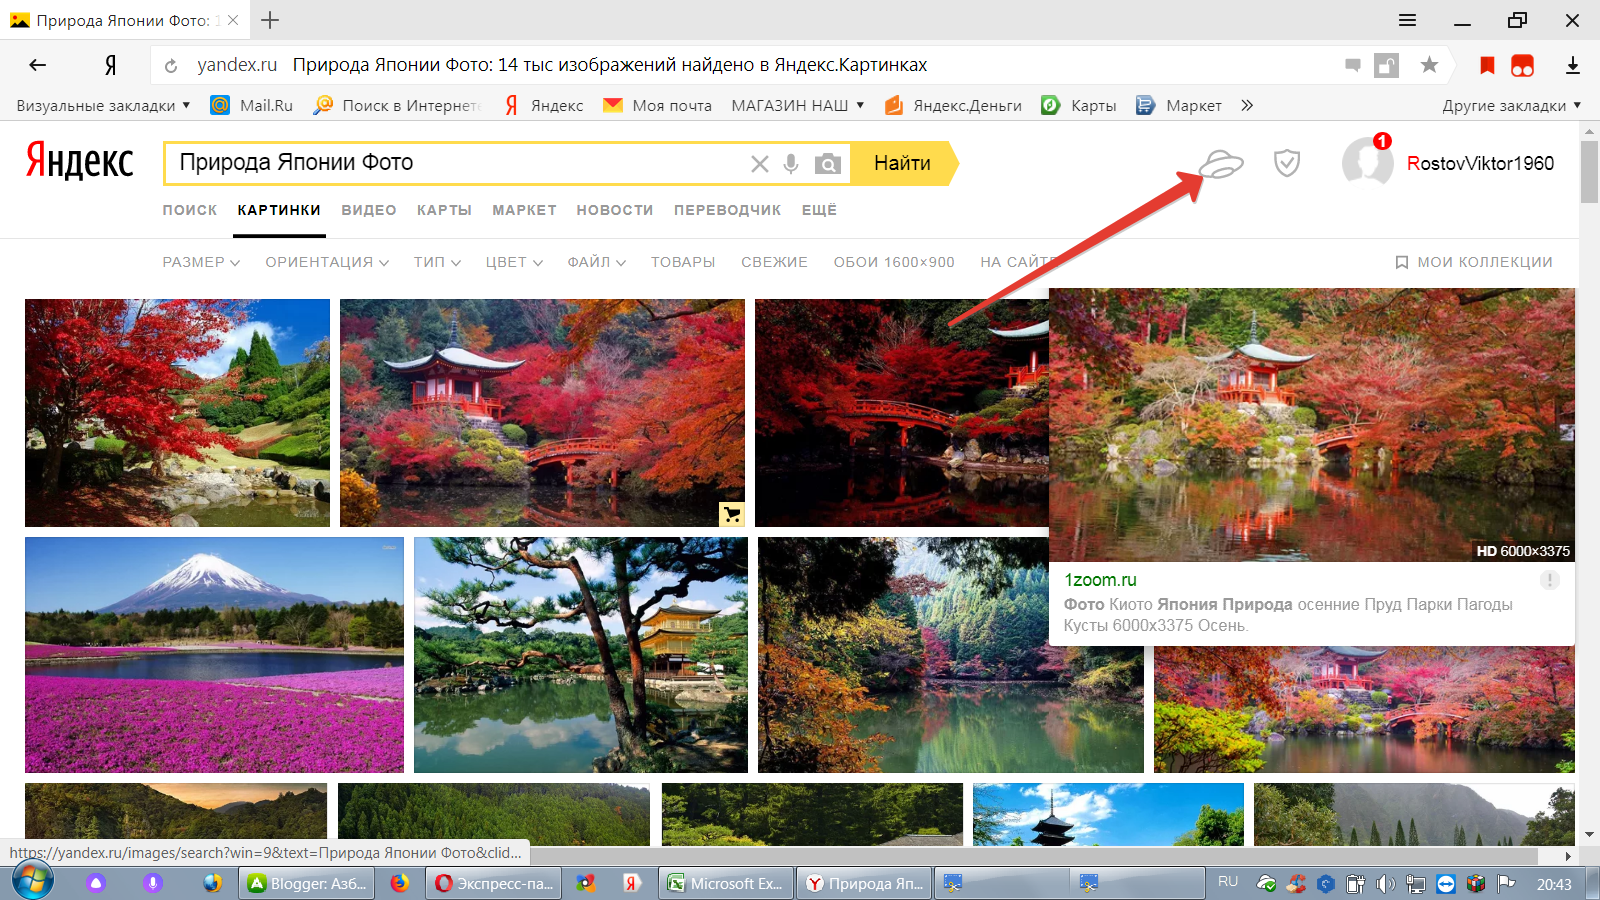 Найти по картинке. Искать похожие изображения по картинке. Яндекс картинки. Яндекс картинки поиск. Поиск по картинке Яндекс.